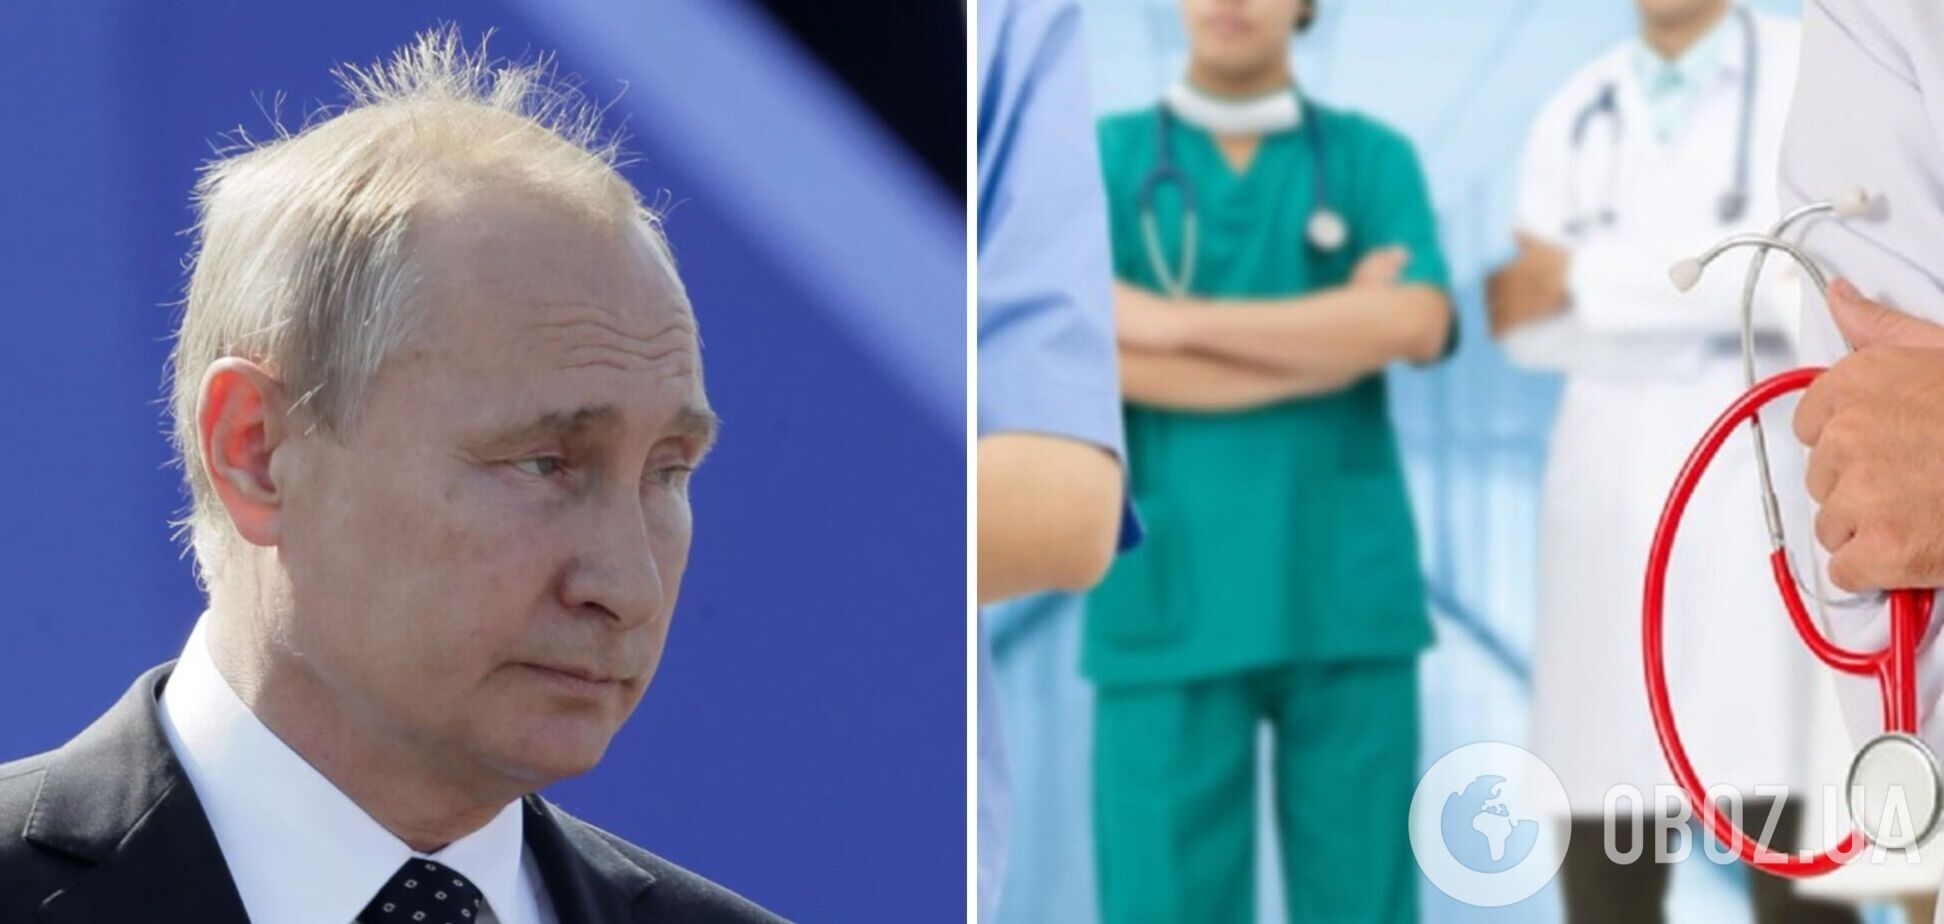 У Путина помутнение сознания, он отменил ряд мероприятий и собирает консилиум врачей – СМИ